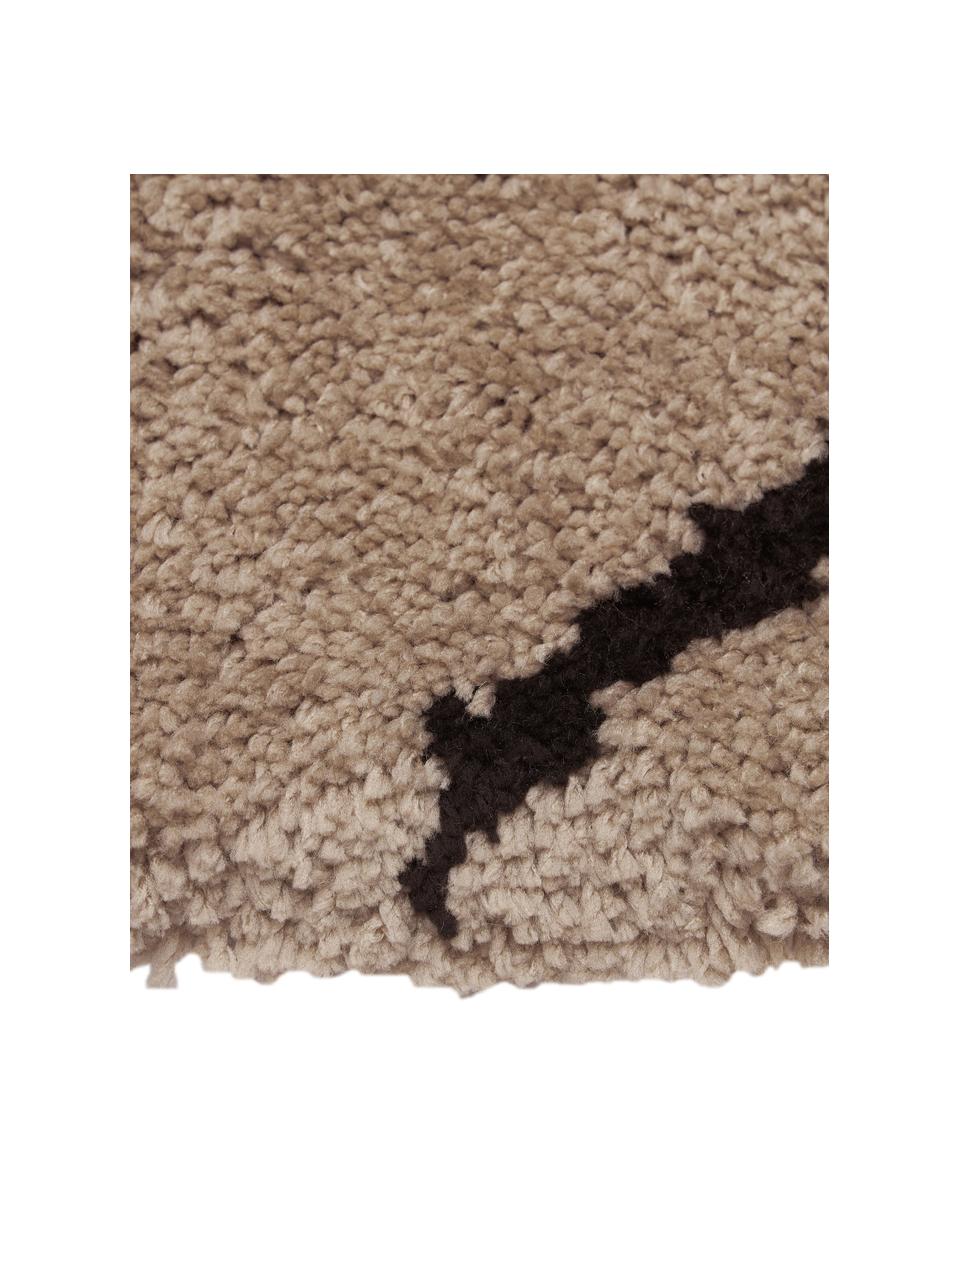 Handgetufteter Hochflor-Teppich Davin, Flor: 100% Polyester-Mikrofaser, Beige, Schwarz, B 160 x L 230 cm (Größe M)